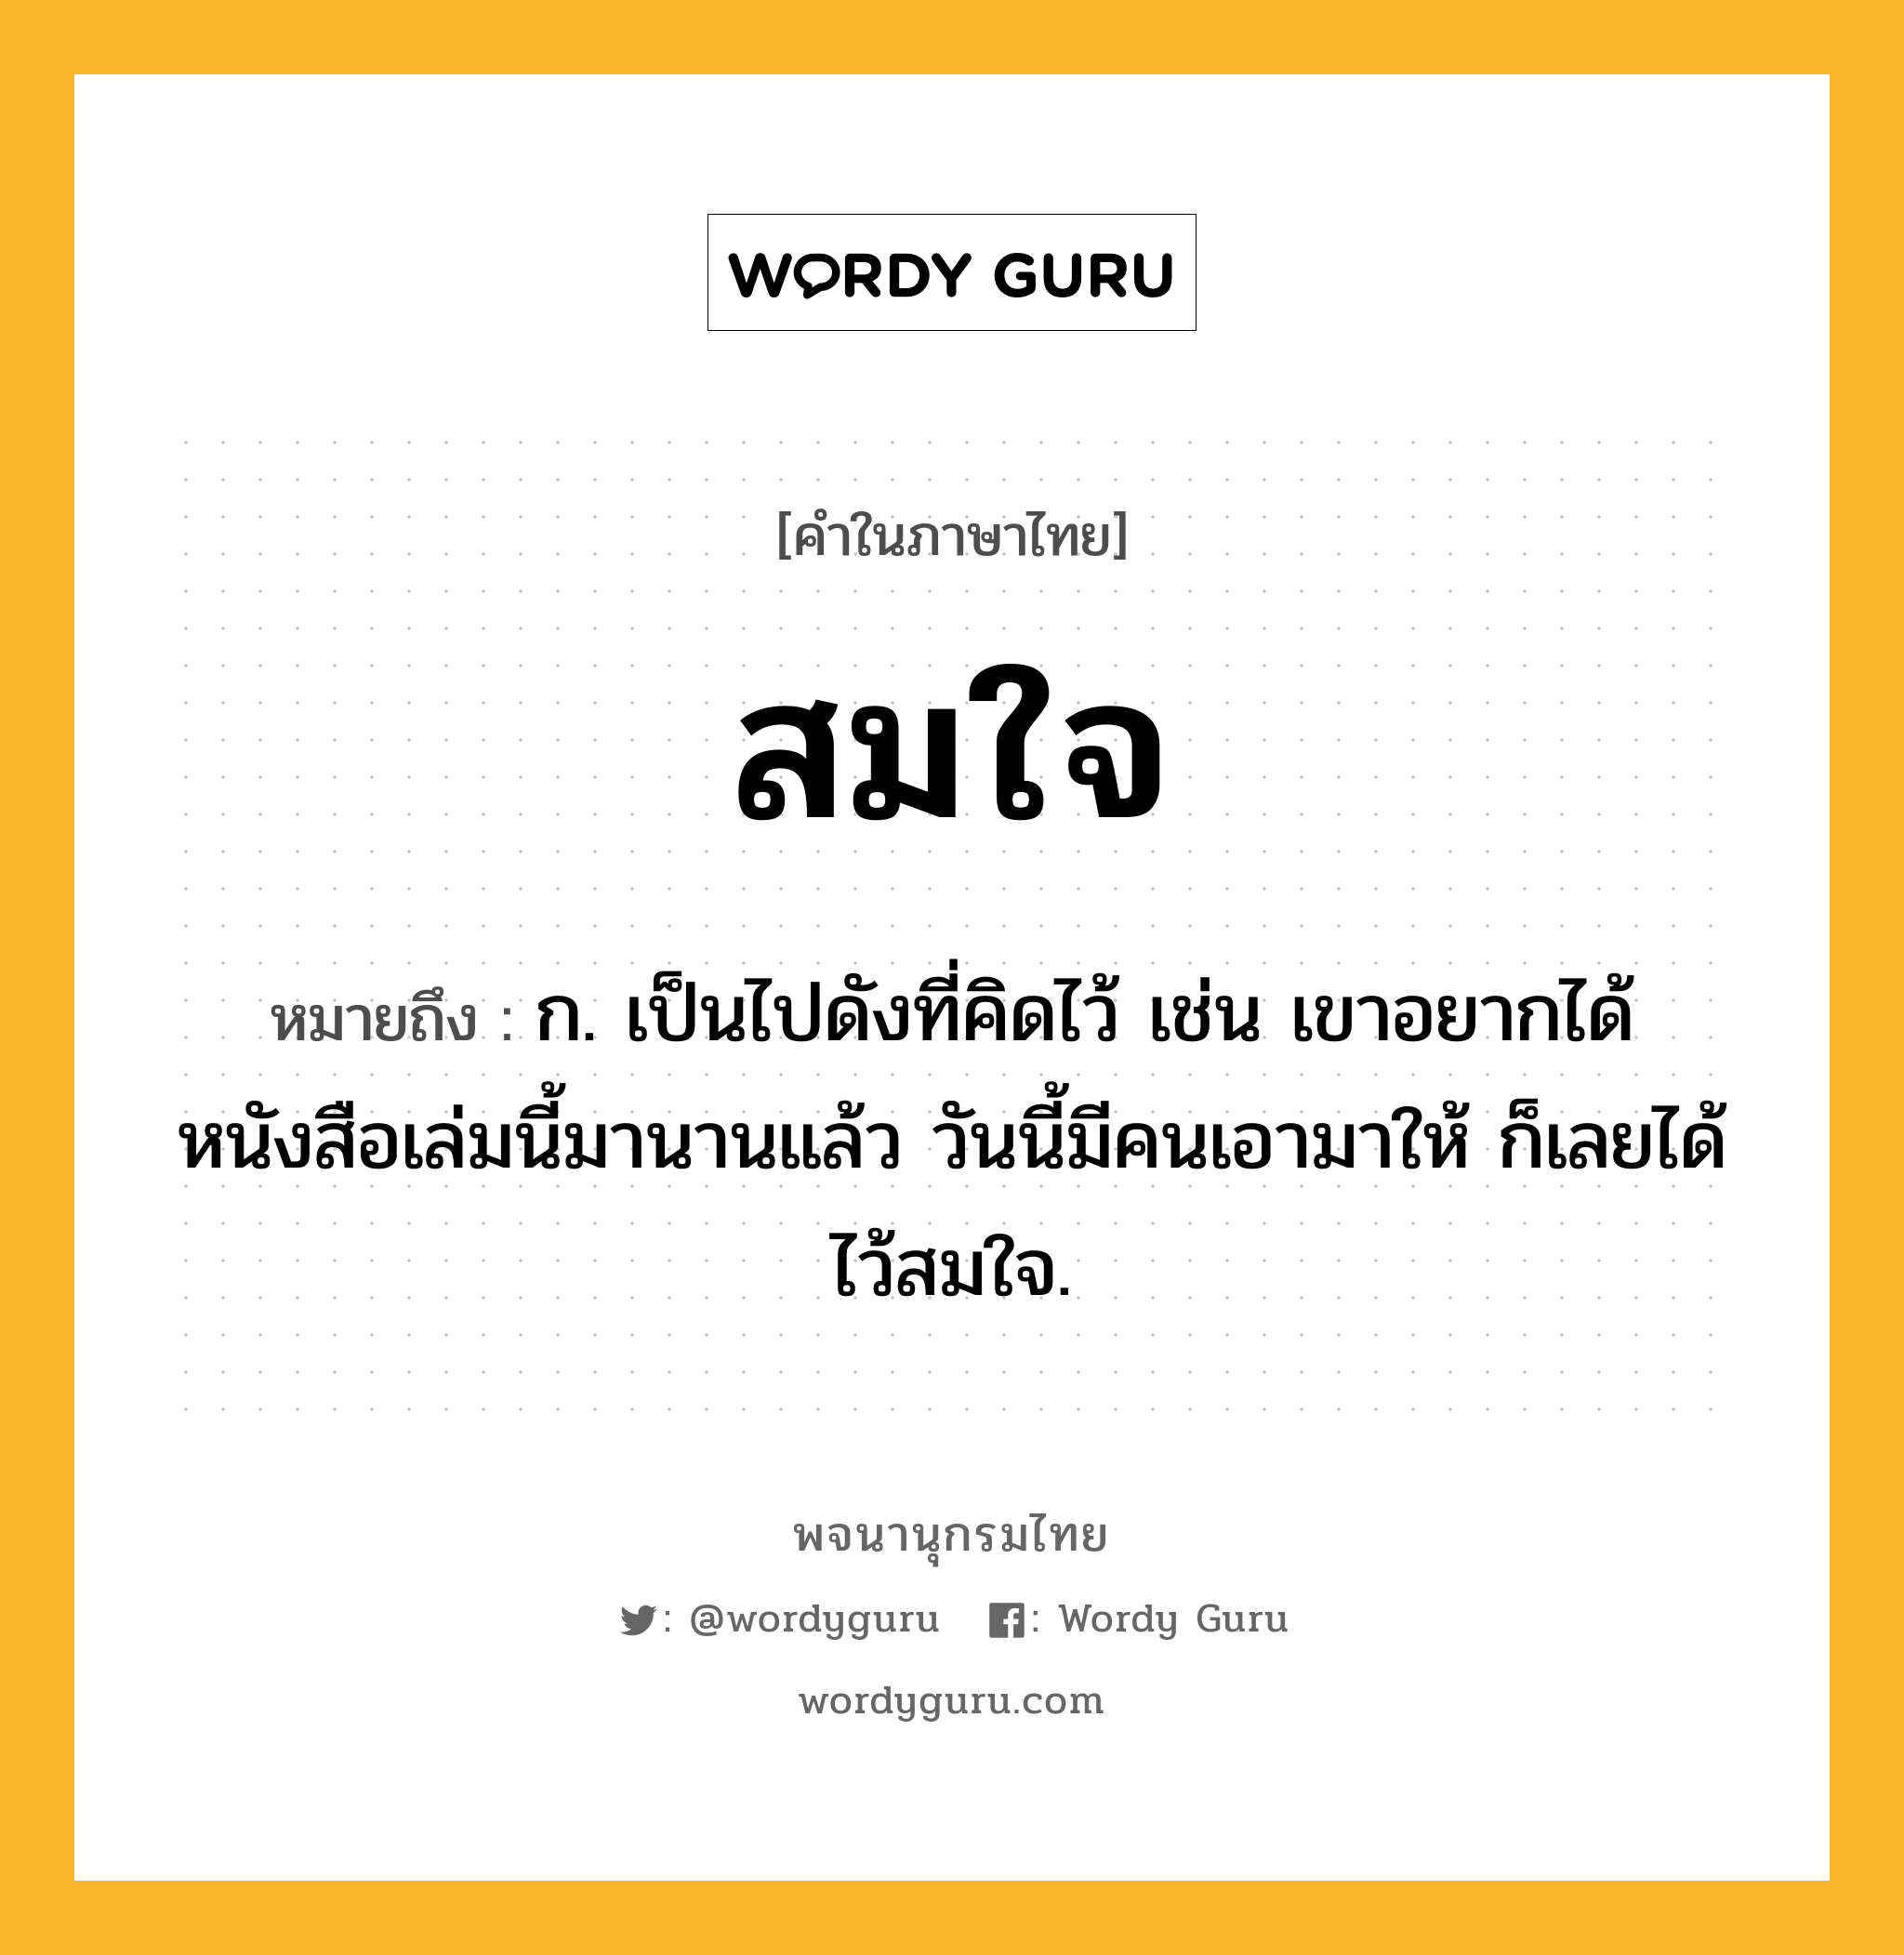 สมใจ ความหมาย หมายถึงอะไร?, คำในภาษาไทย สมใจ หมายถึง ก. เป็นไปดังที่คิดไว้ เช่น เขาอยากได้หนังสือเล่มนี้มานานแล้ว วันนี้มีคนเอามาให้ ก็เลยได้ไว้สมใจ.